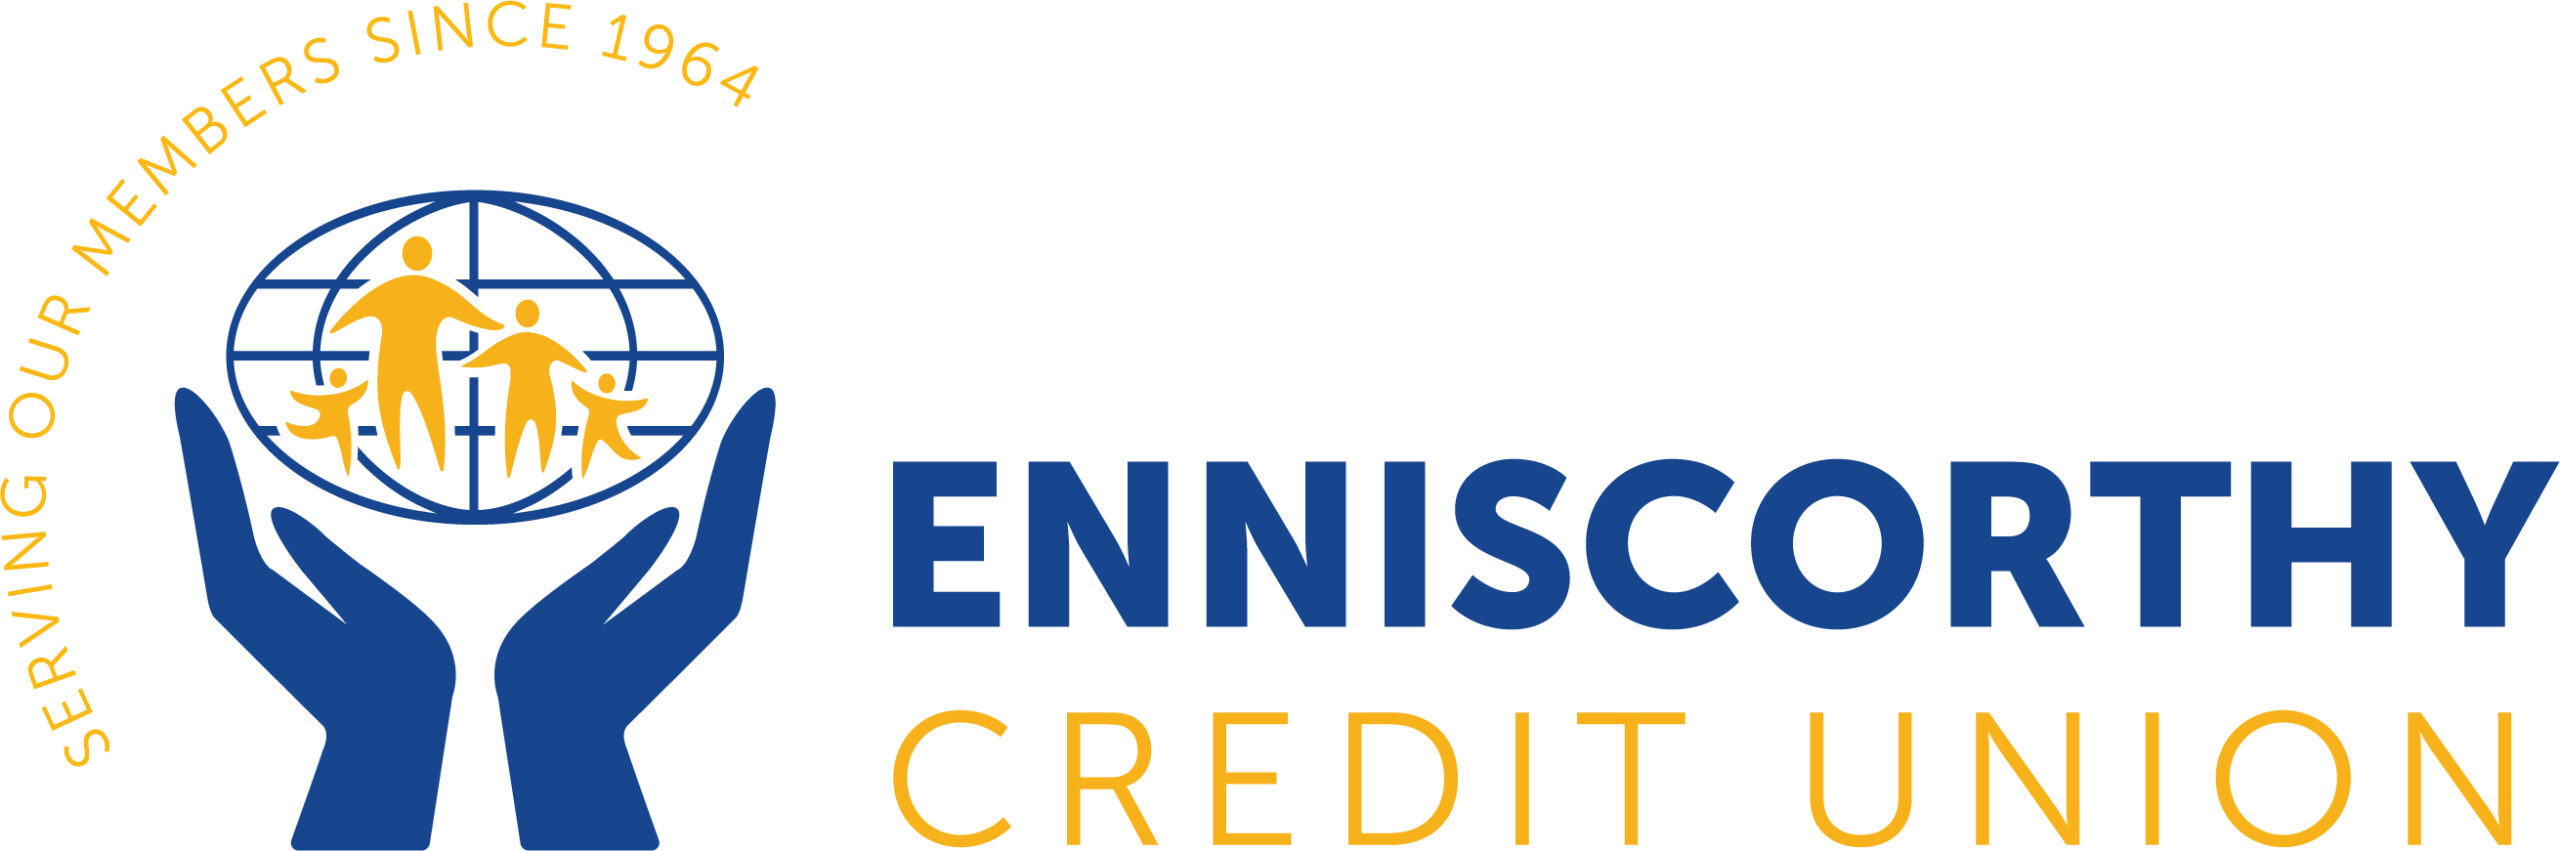 Enniscorthy Credit Union